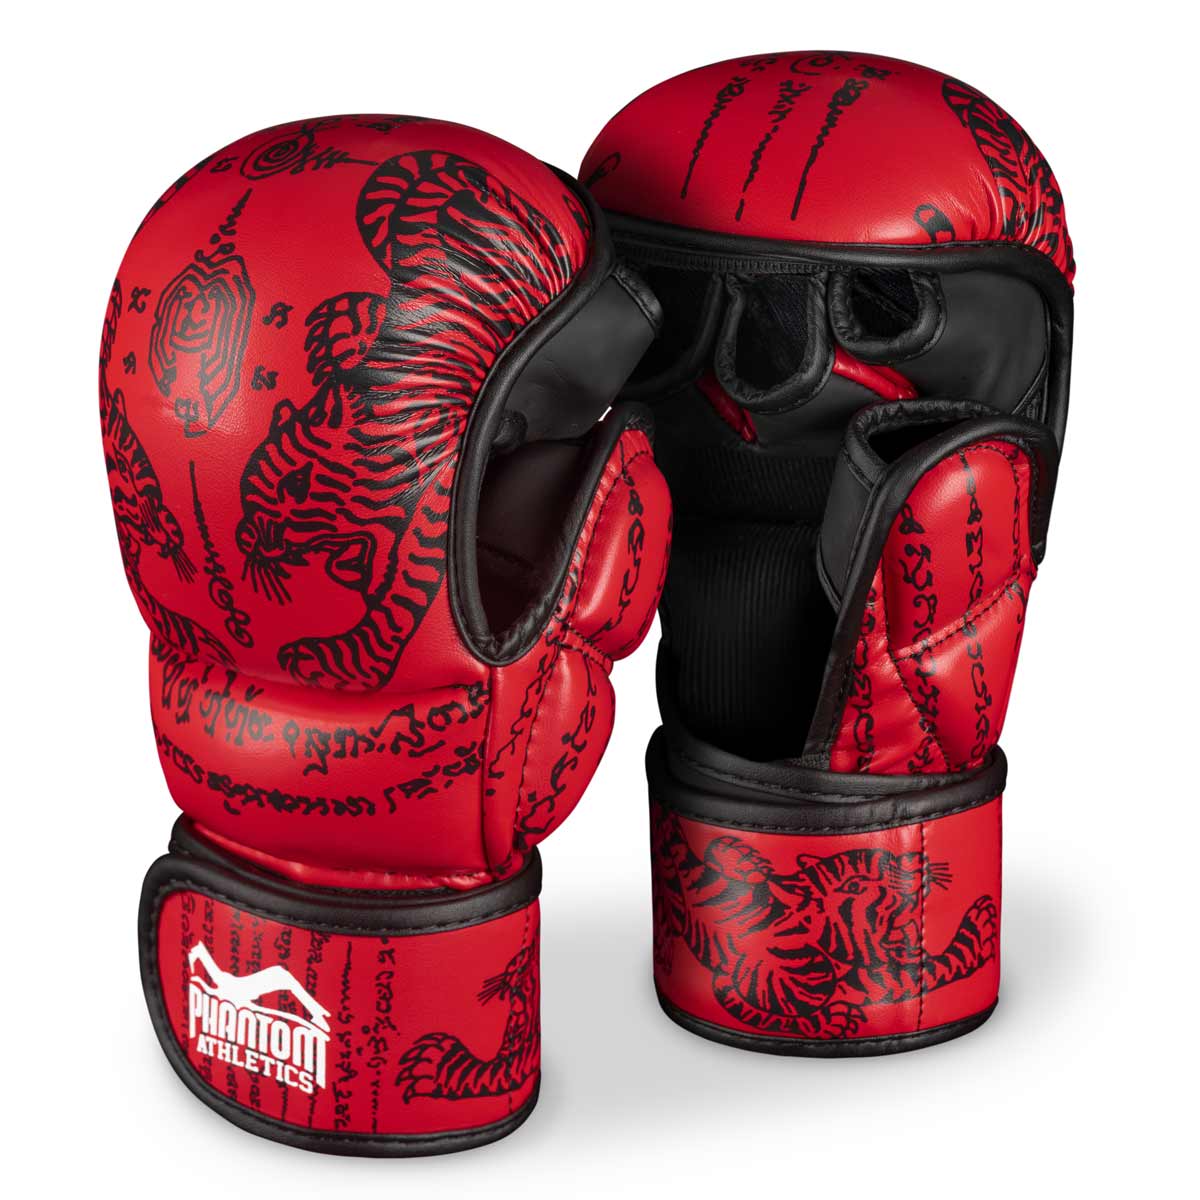 Rękawice Phantom Muay Thai przeznaczone do sparingów, zawodów i treningów boksu tajskiego i MMA. W tradycyjnym stylu Sak Yant i kolorze czerwonym.